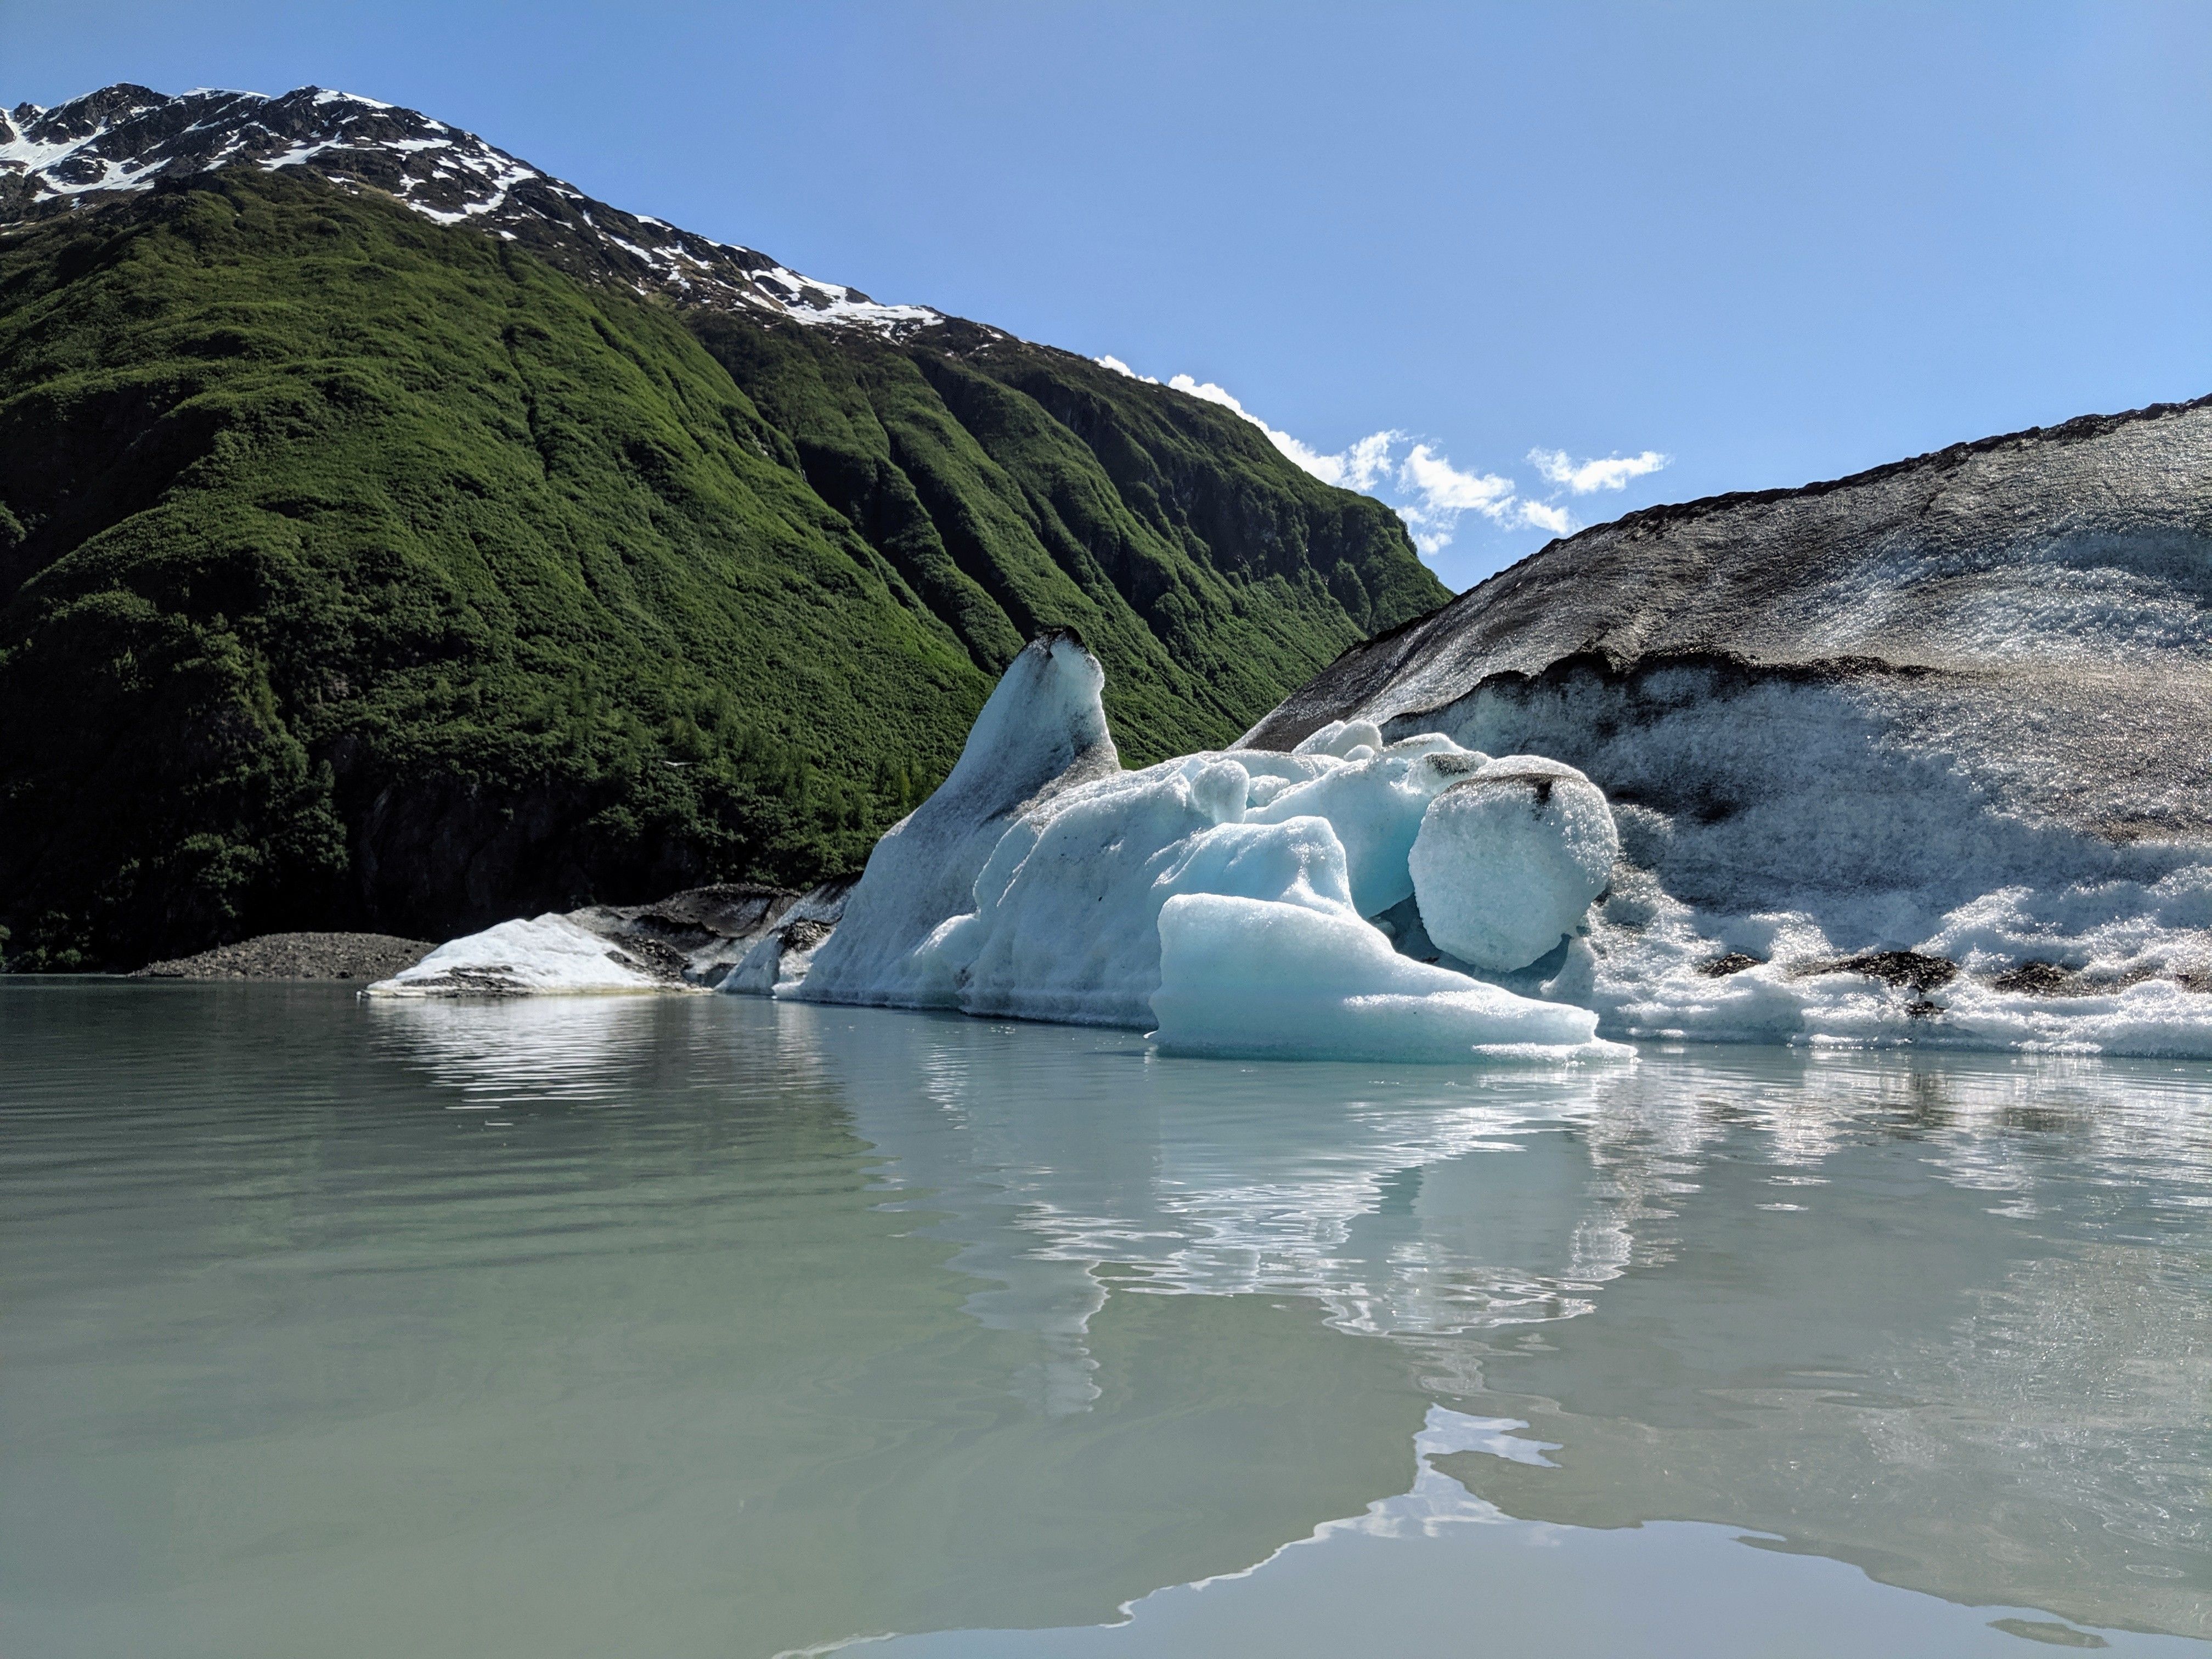 HUGE iceberg in the Valdez Glacier Lake